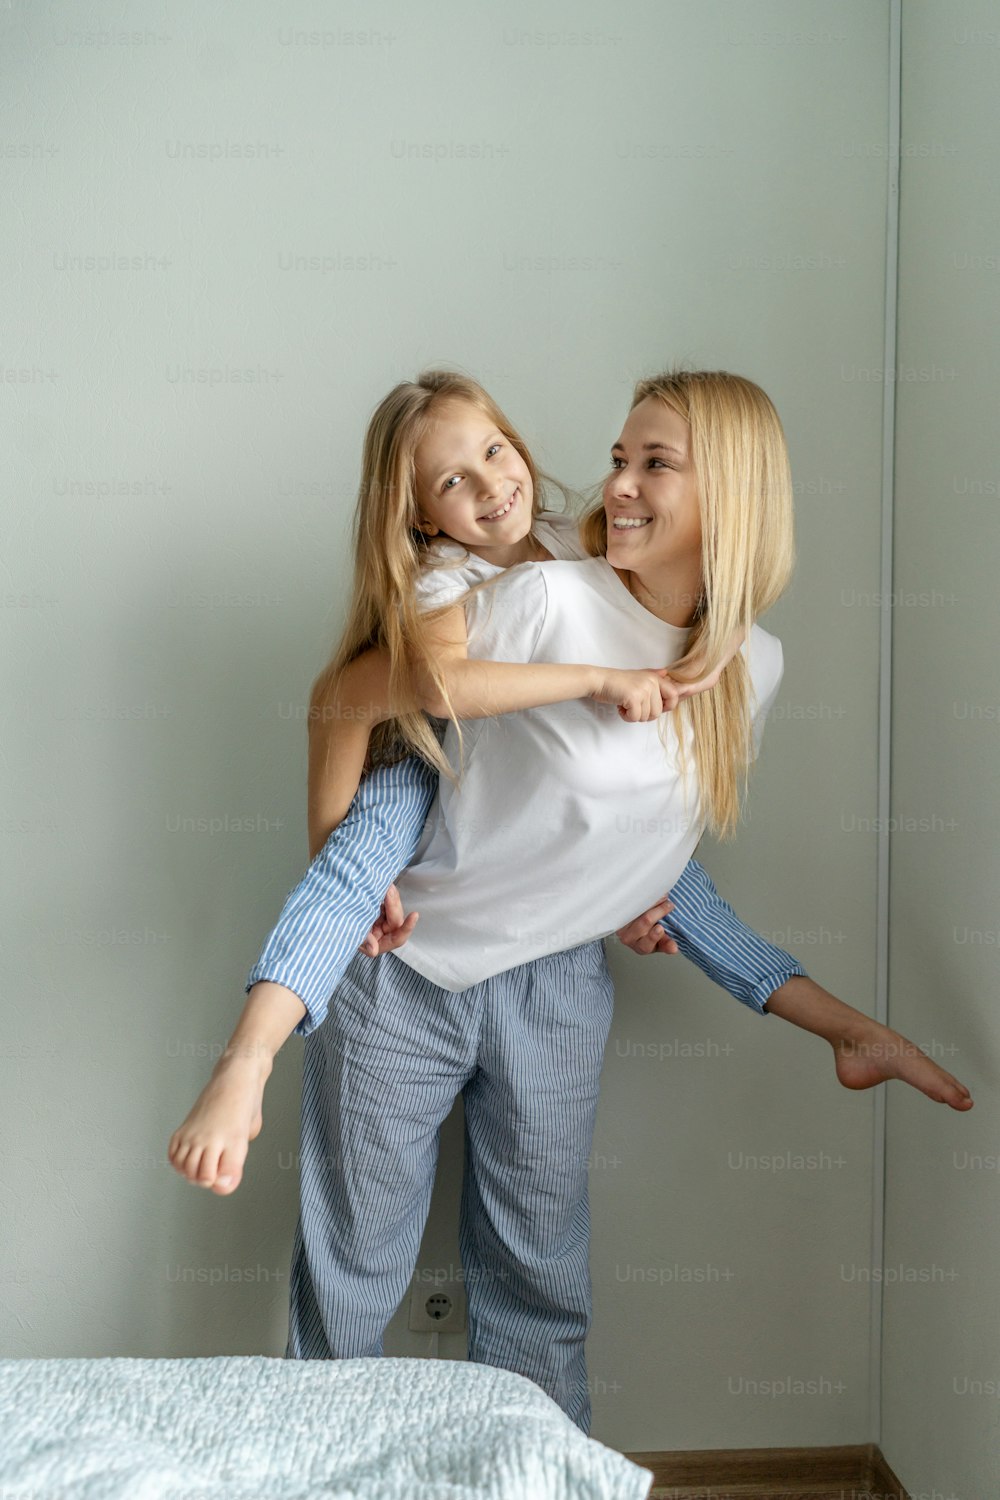 어린 소녀와 함께 엄마는 집에서 즐거운 시간을 보낸다. 가벼운 인물 사진, 흰색 티쇼츠.